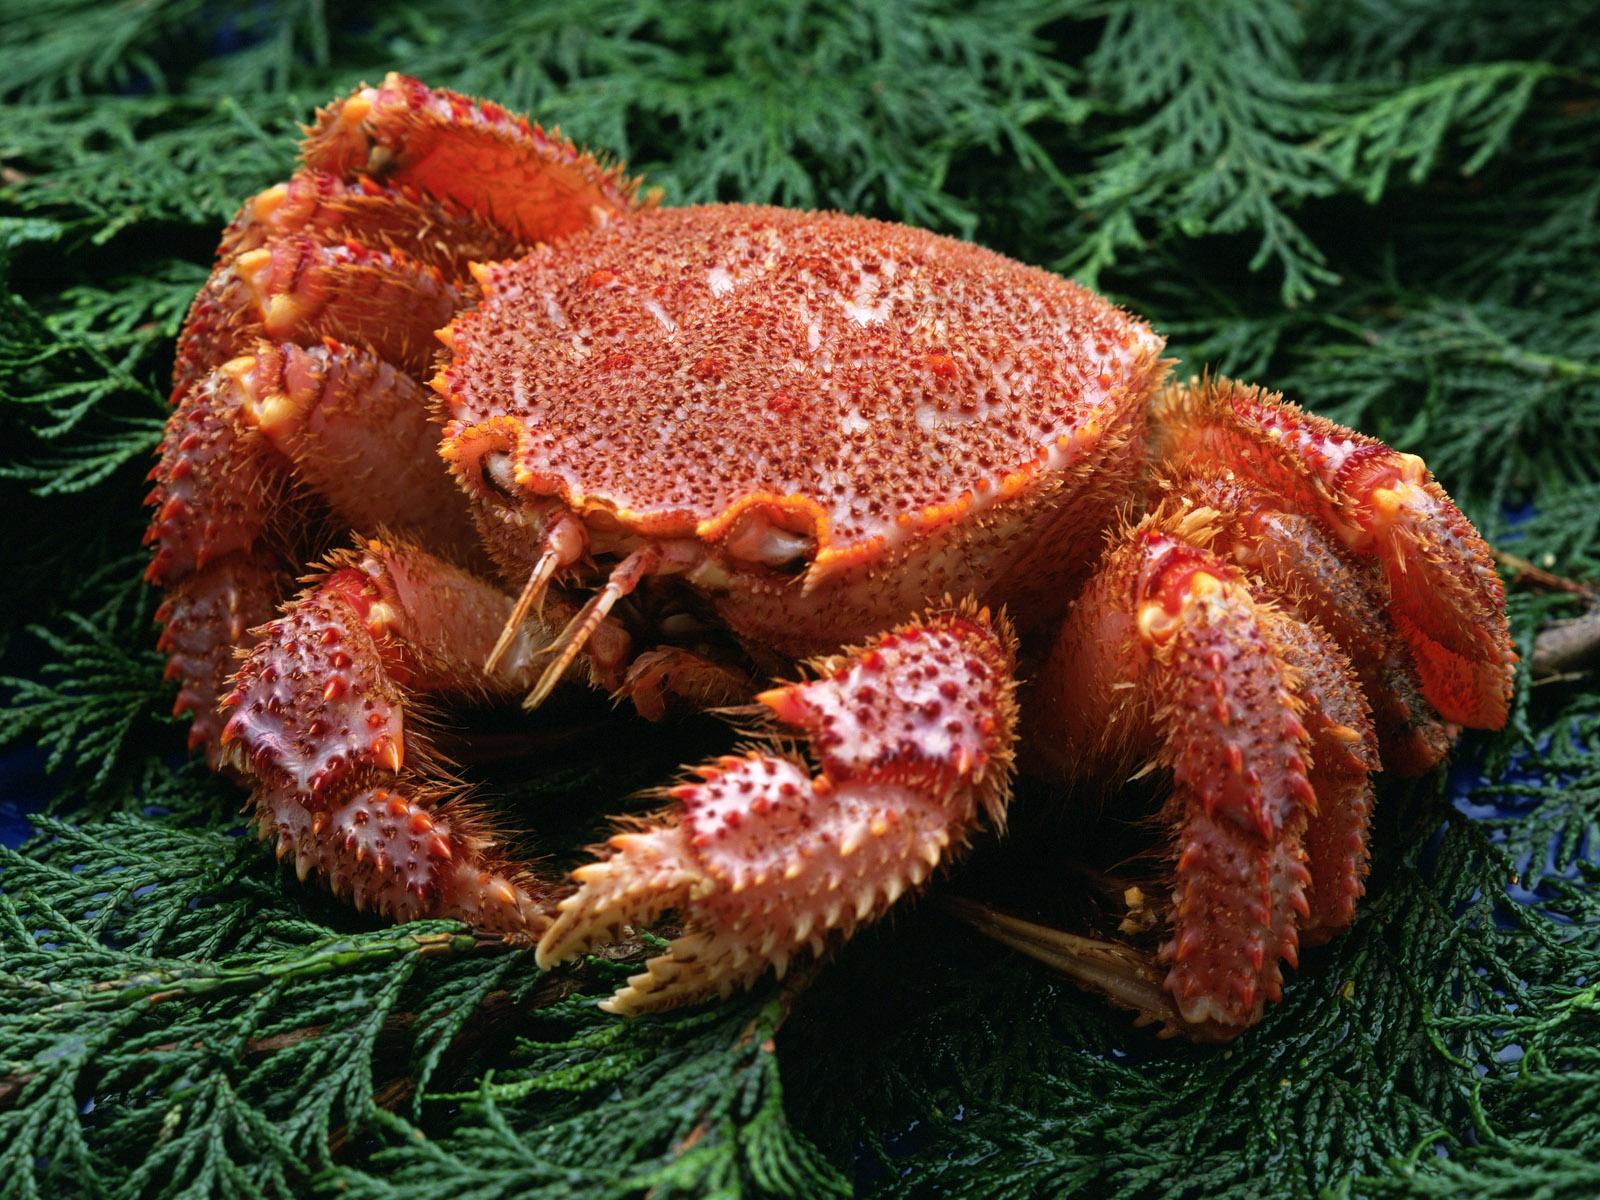 Bilder Krabben Lebensmittel Meeresfrüchte das Essen